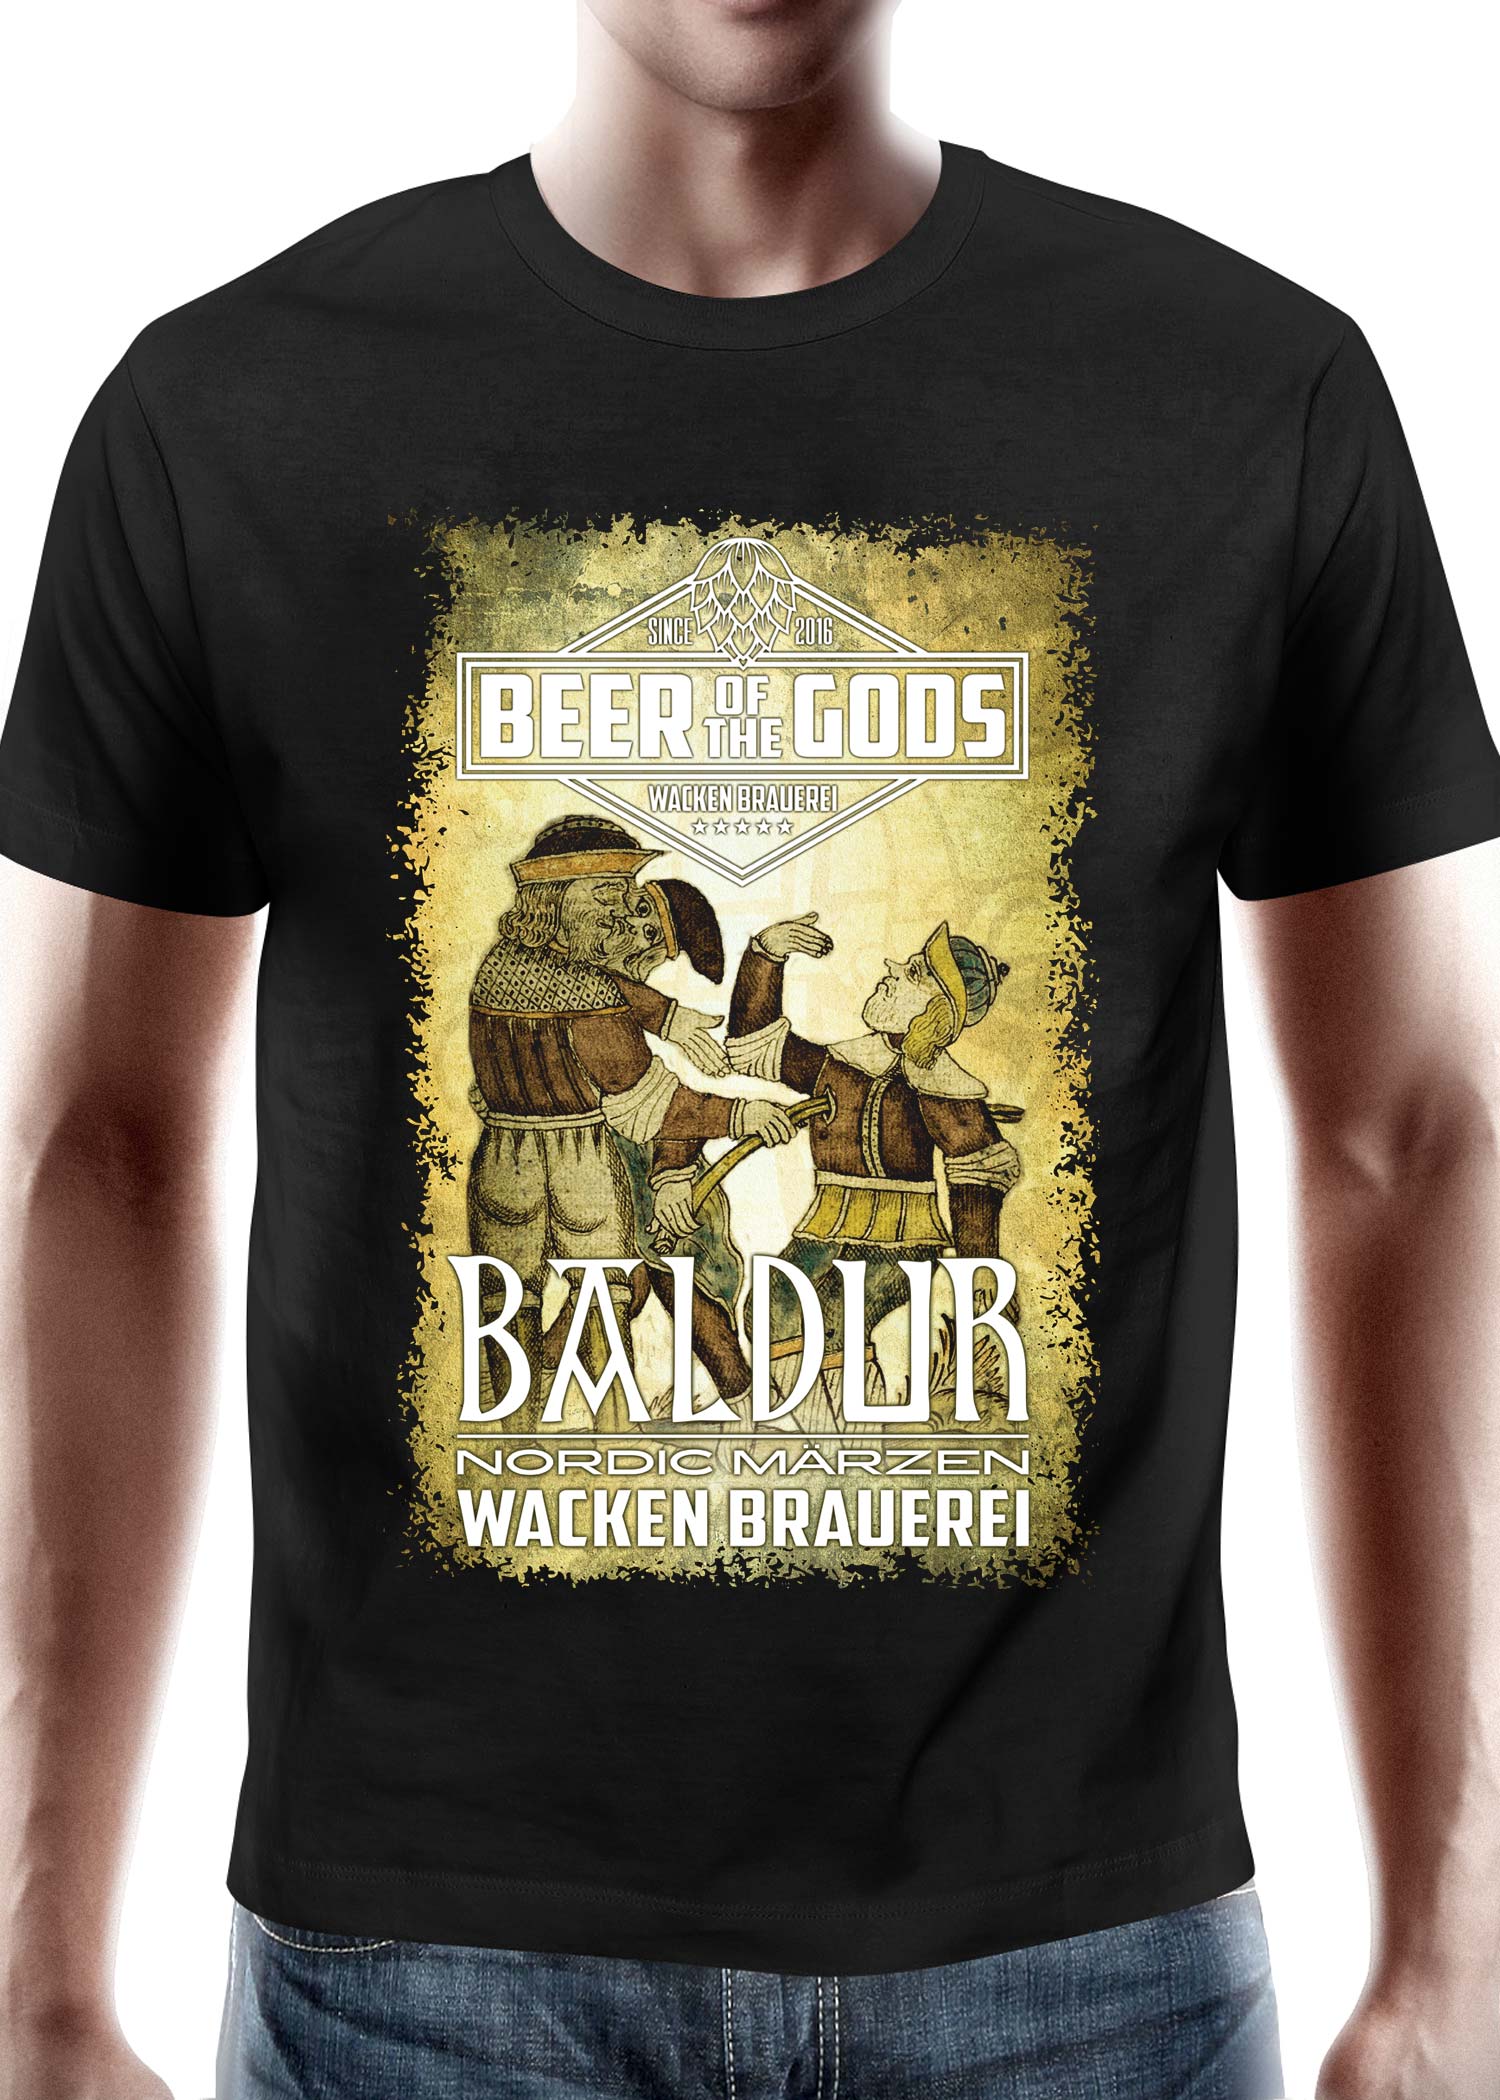 Baldur - Wacken Brauerei, T-Shirt, Größe XL